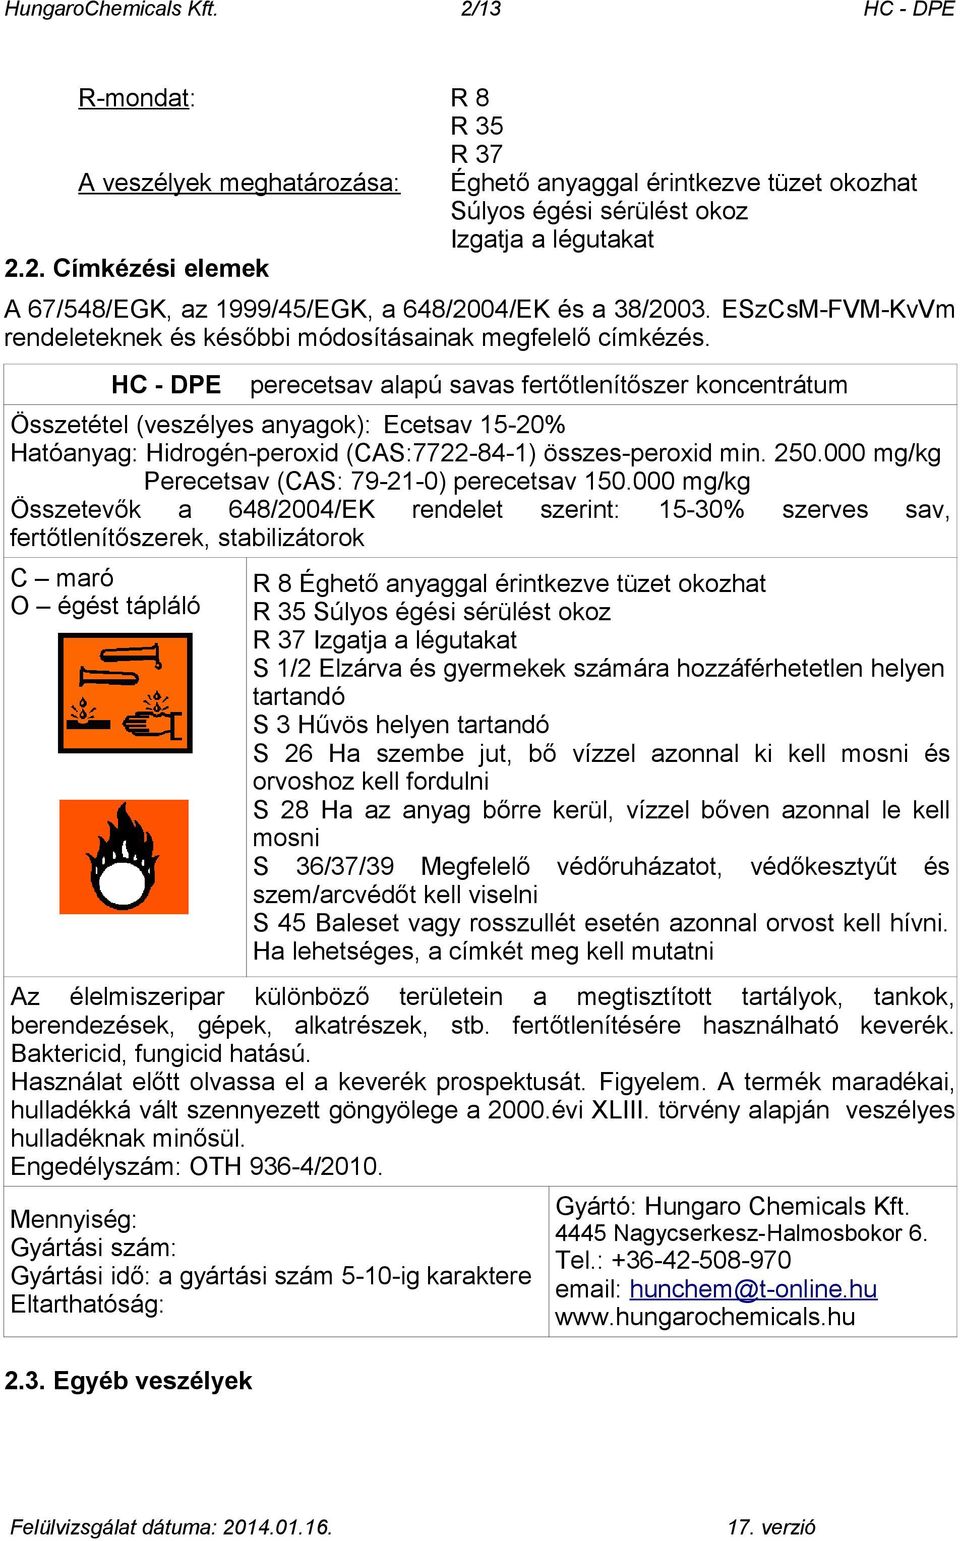 HC - DPE perecetsav alapú savas fertőtlenítőszer koncentrátum Összetétel (veszélyes anyagok): Ecetsav 15-20% Hatóanyag: Hidrogén-peroxid (CAS:7722-84-1) összes-peroxid min. 250.